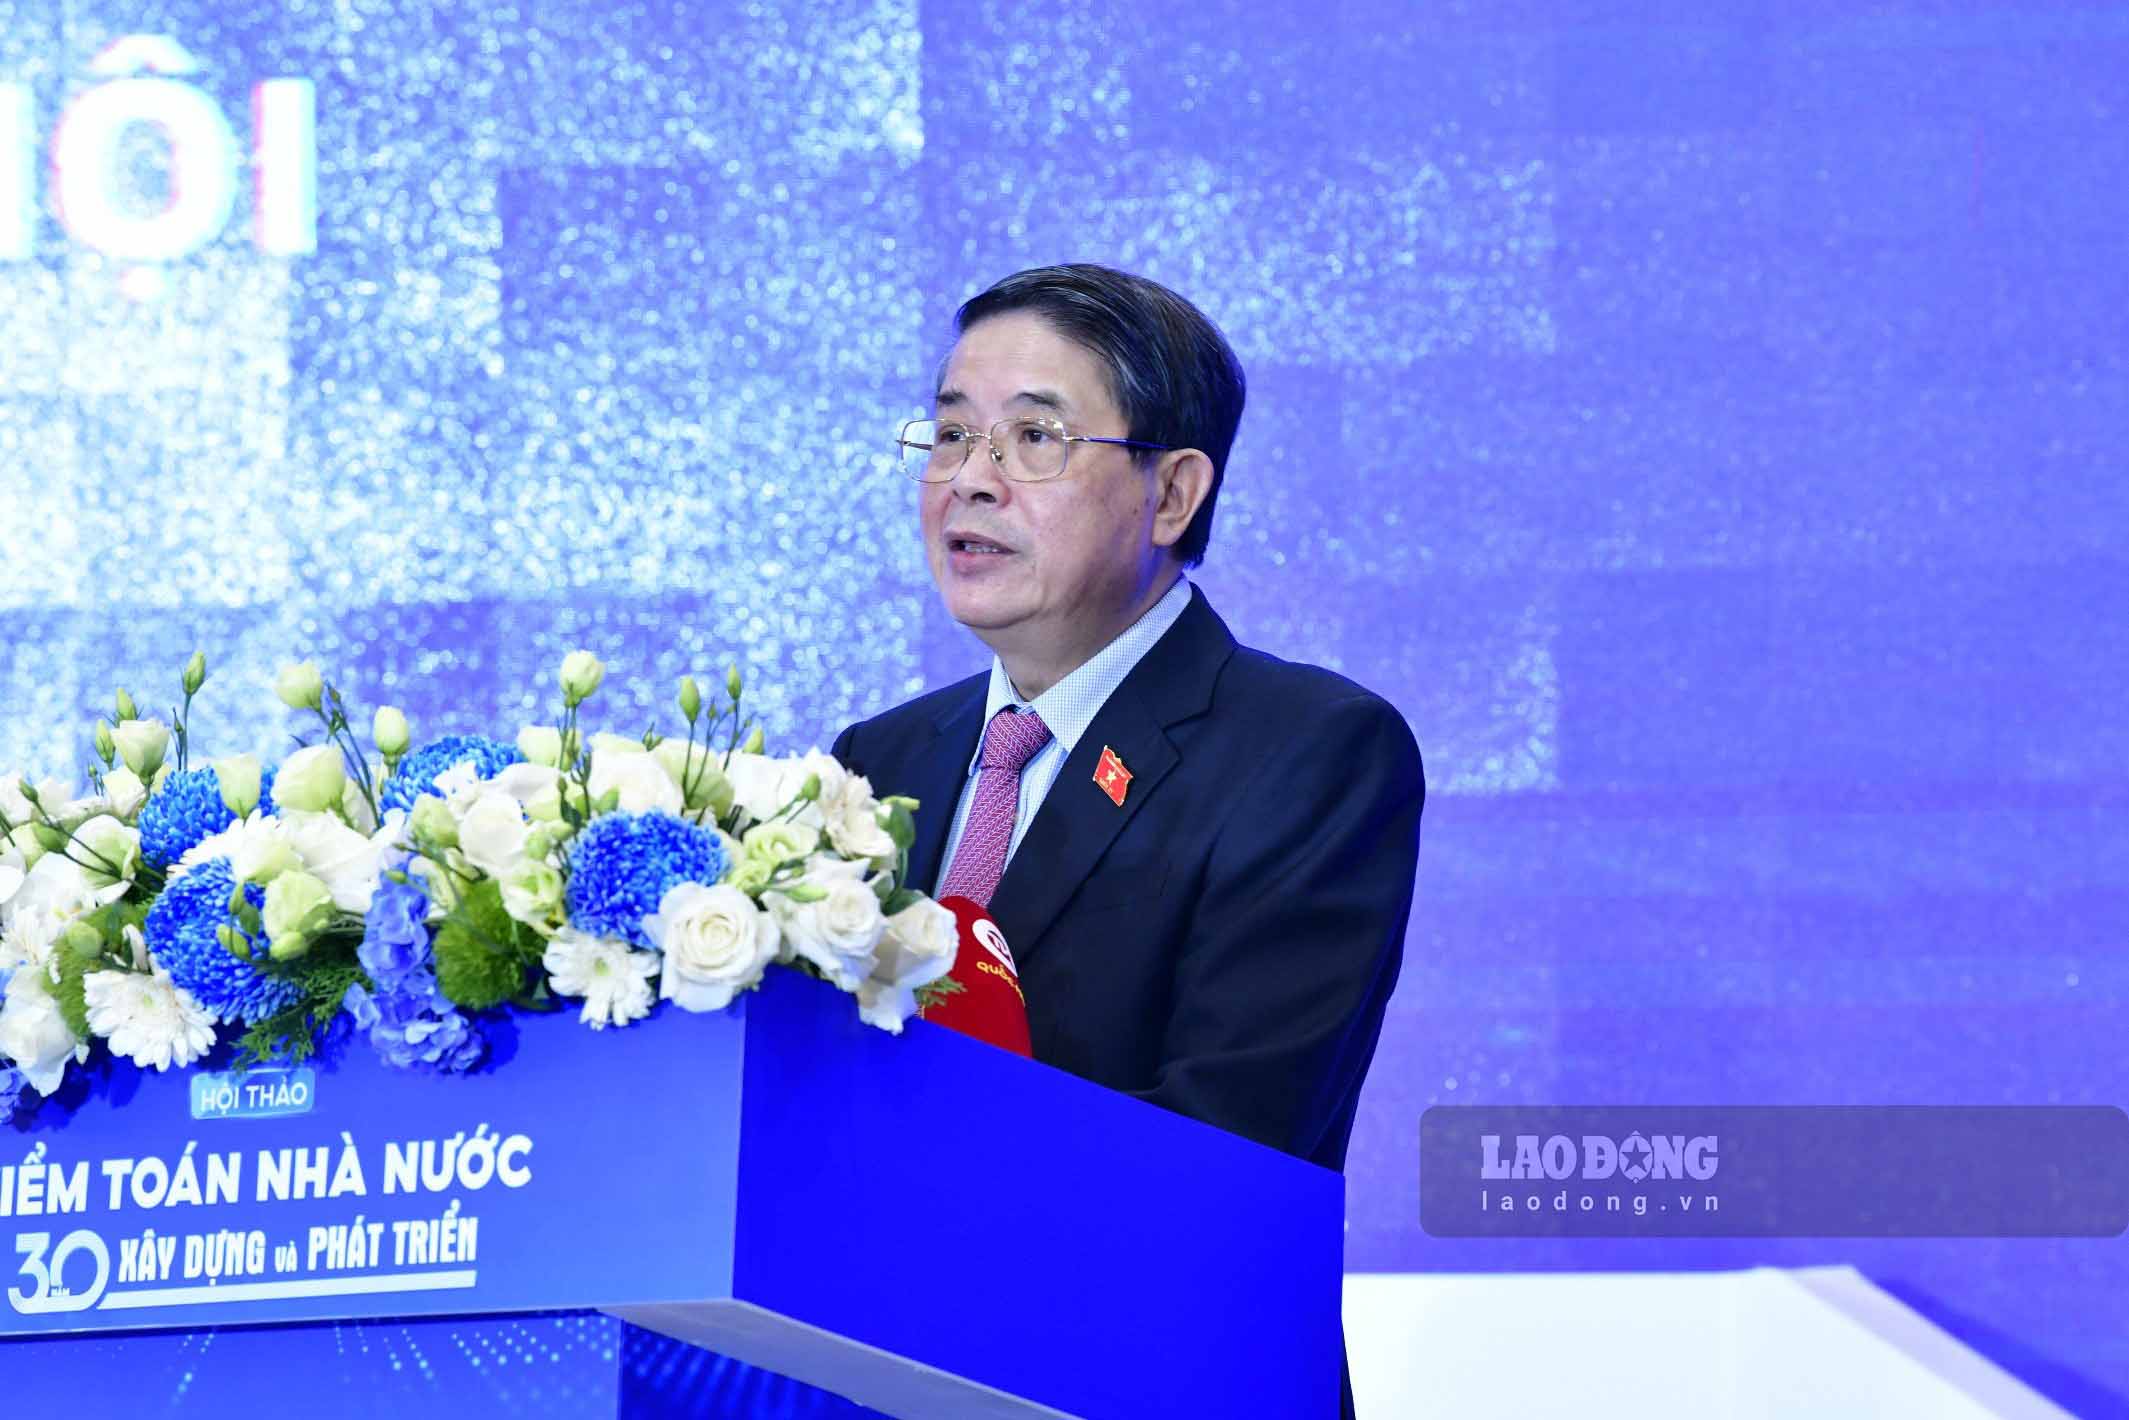 Phó Chủ tịch Quốc hội Nguyễn Đức Hải phát biểu chào mừng hội thảo.